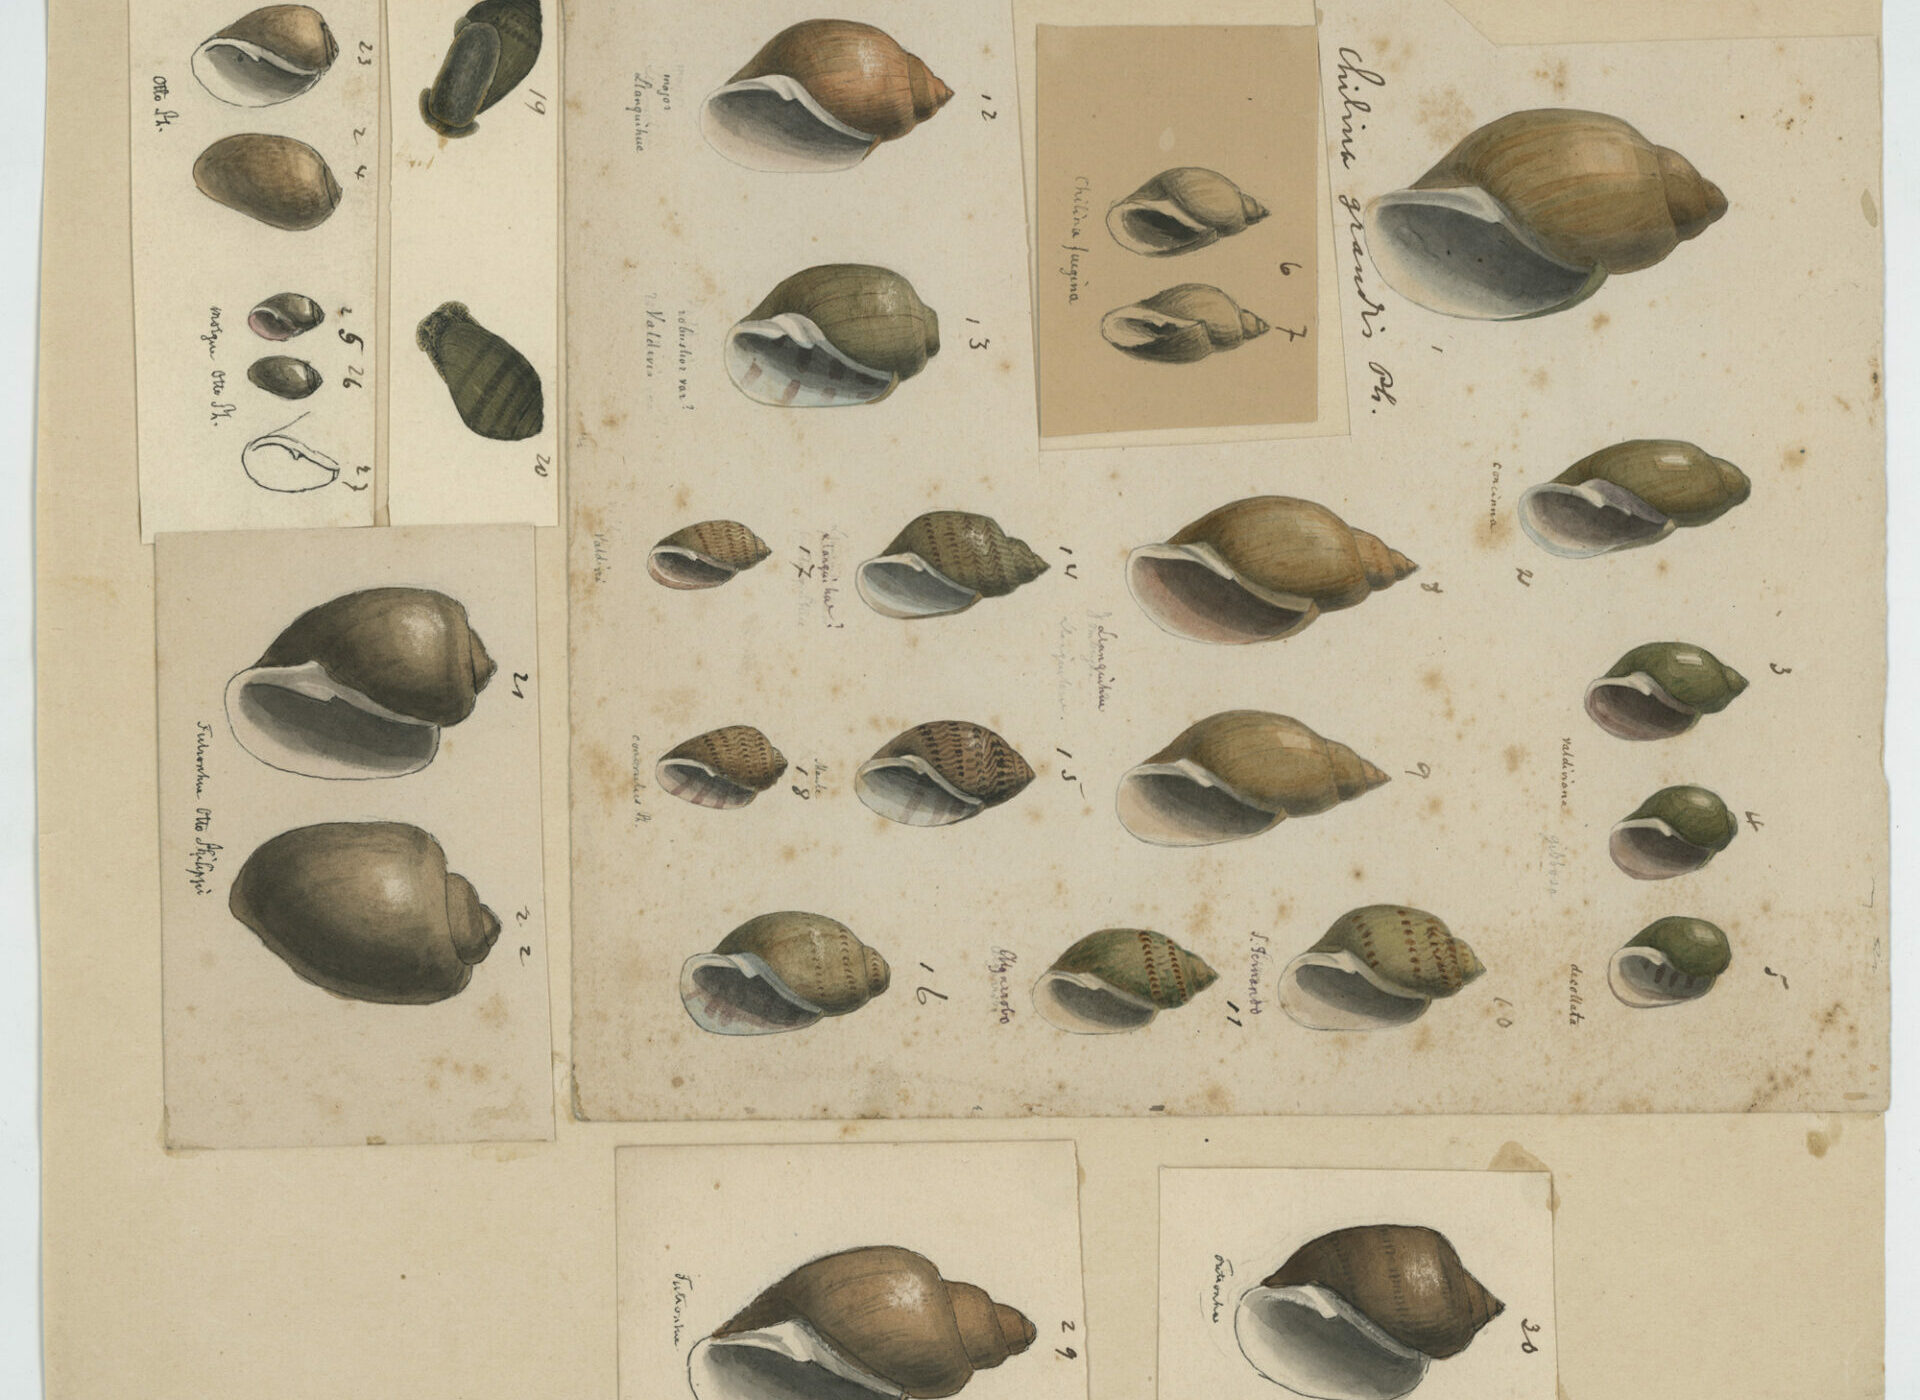 Exhibirán inédita muestra del archivo del naturalista alemán Rudolf Philippi en Chile, a 120 años de su muerte